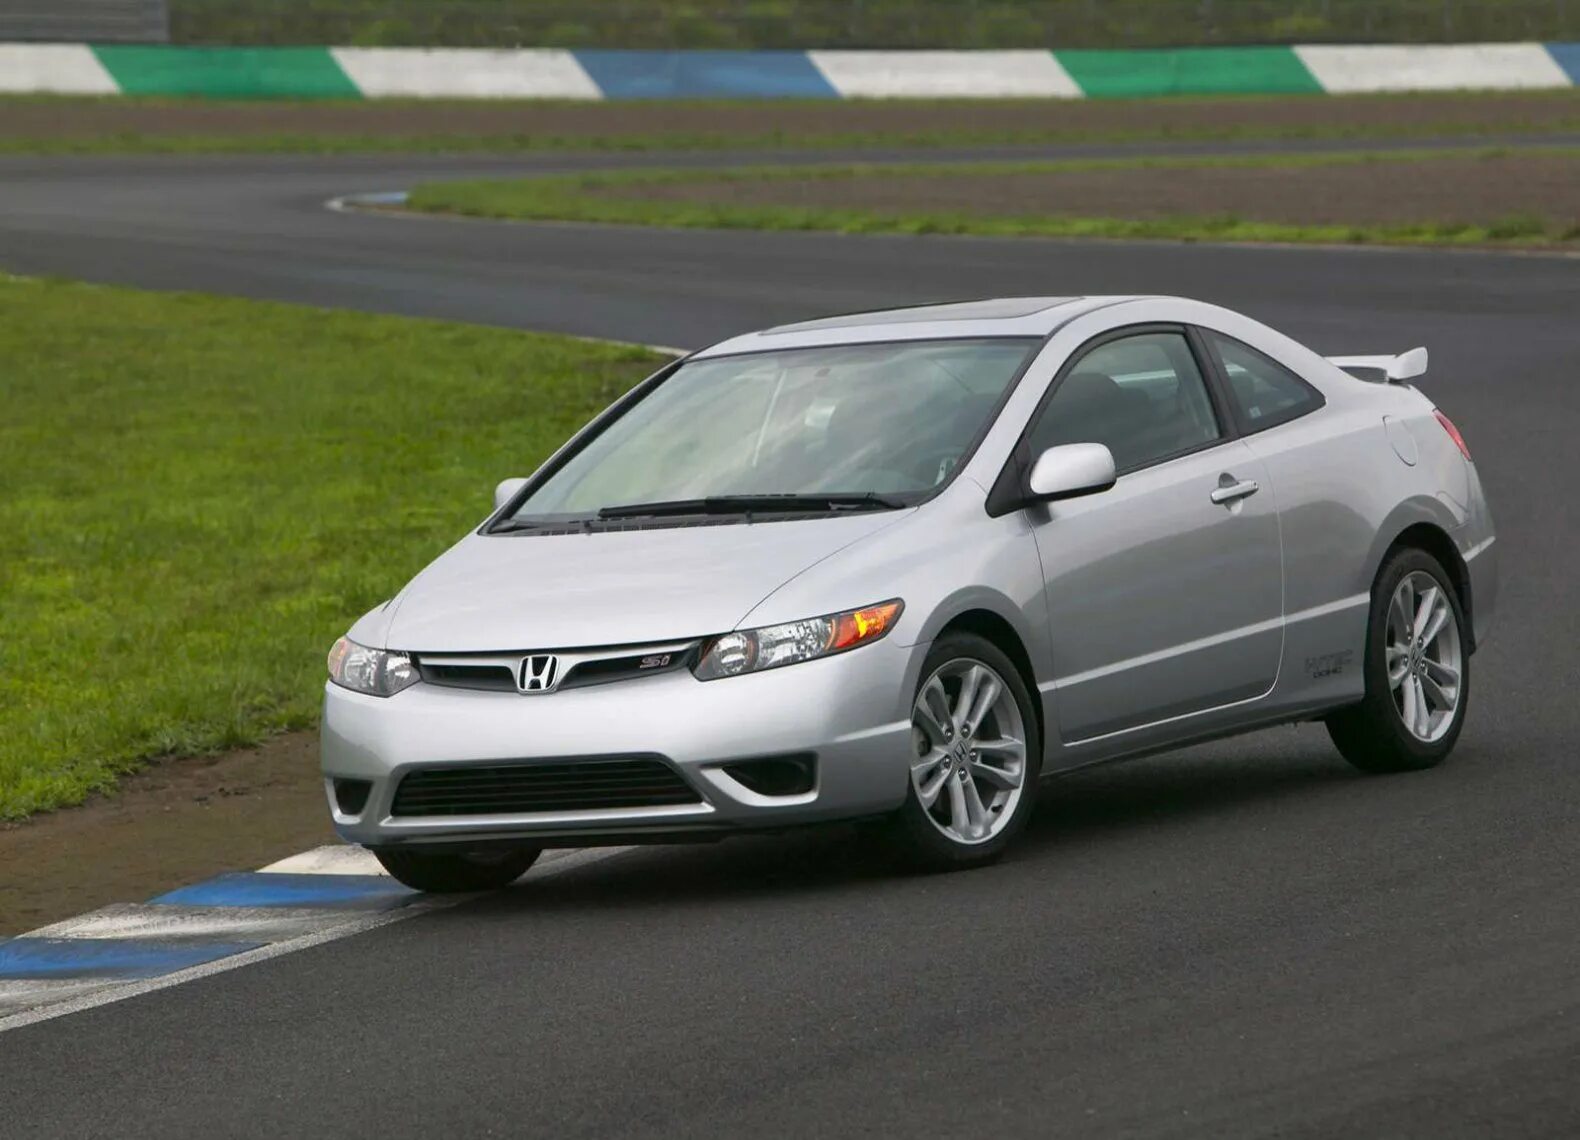 Honda Civic 2006 Sport. Honda Civic 2006 2008. Honda Civic 8 Coupe. Honda Civic si 2008. Цивик 2006 года